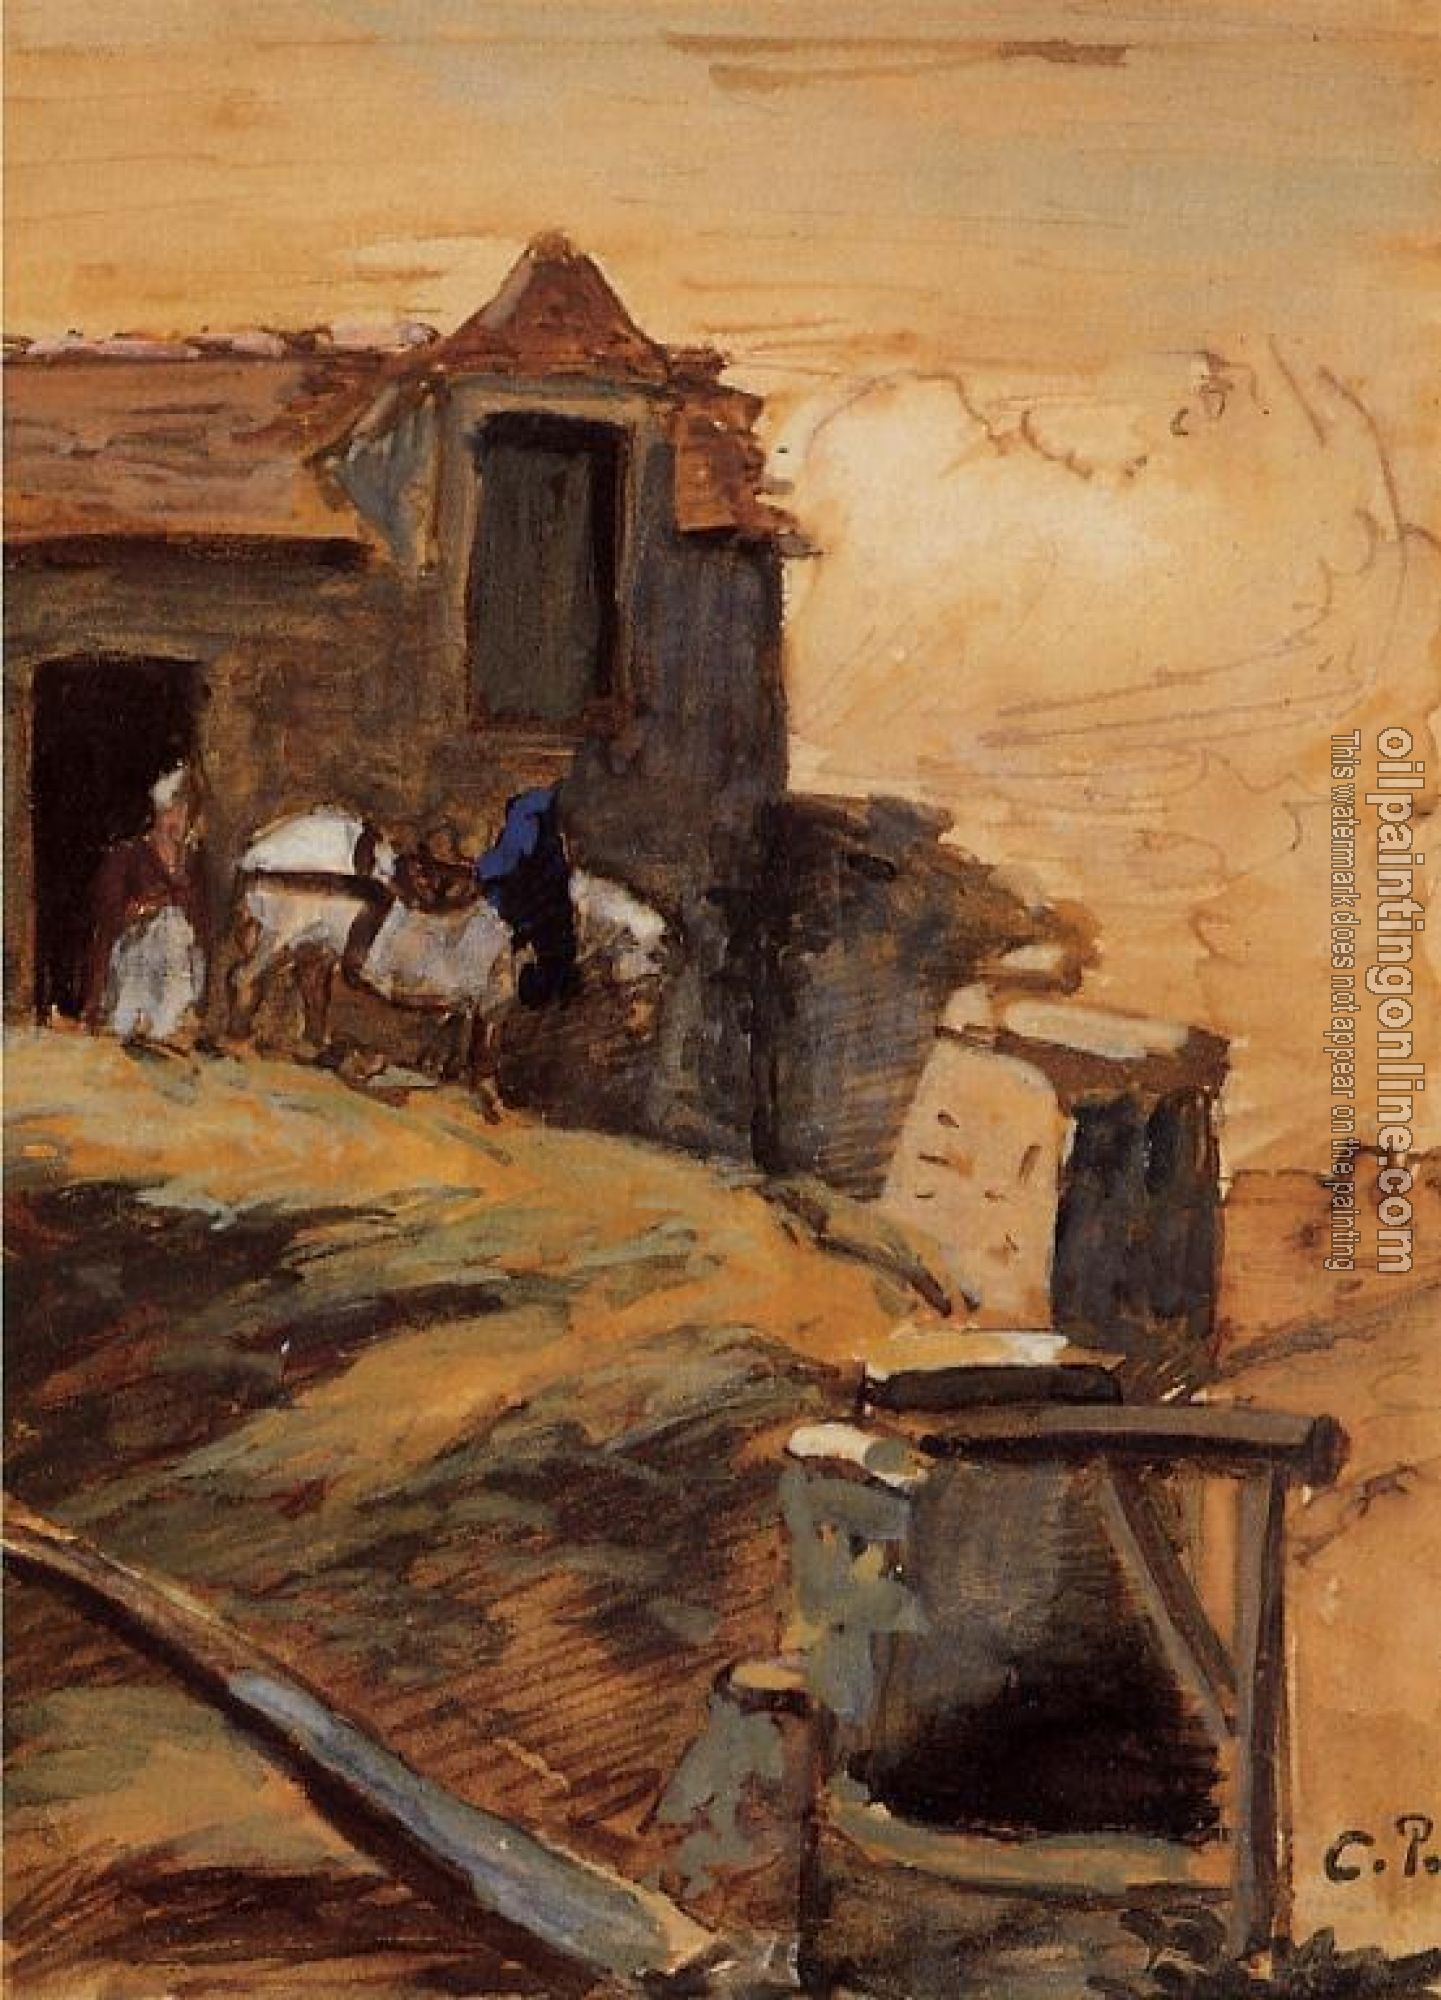 Pissarro, Camille - White Horse on a Farm